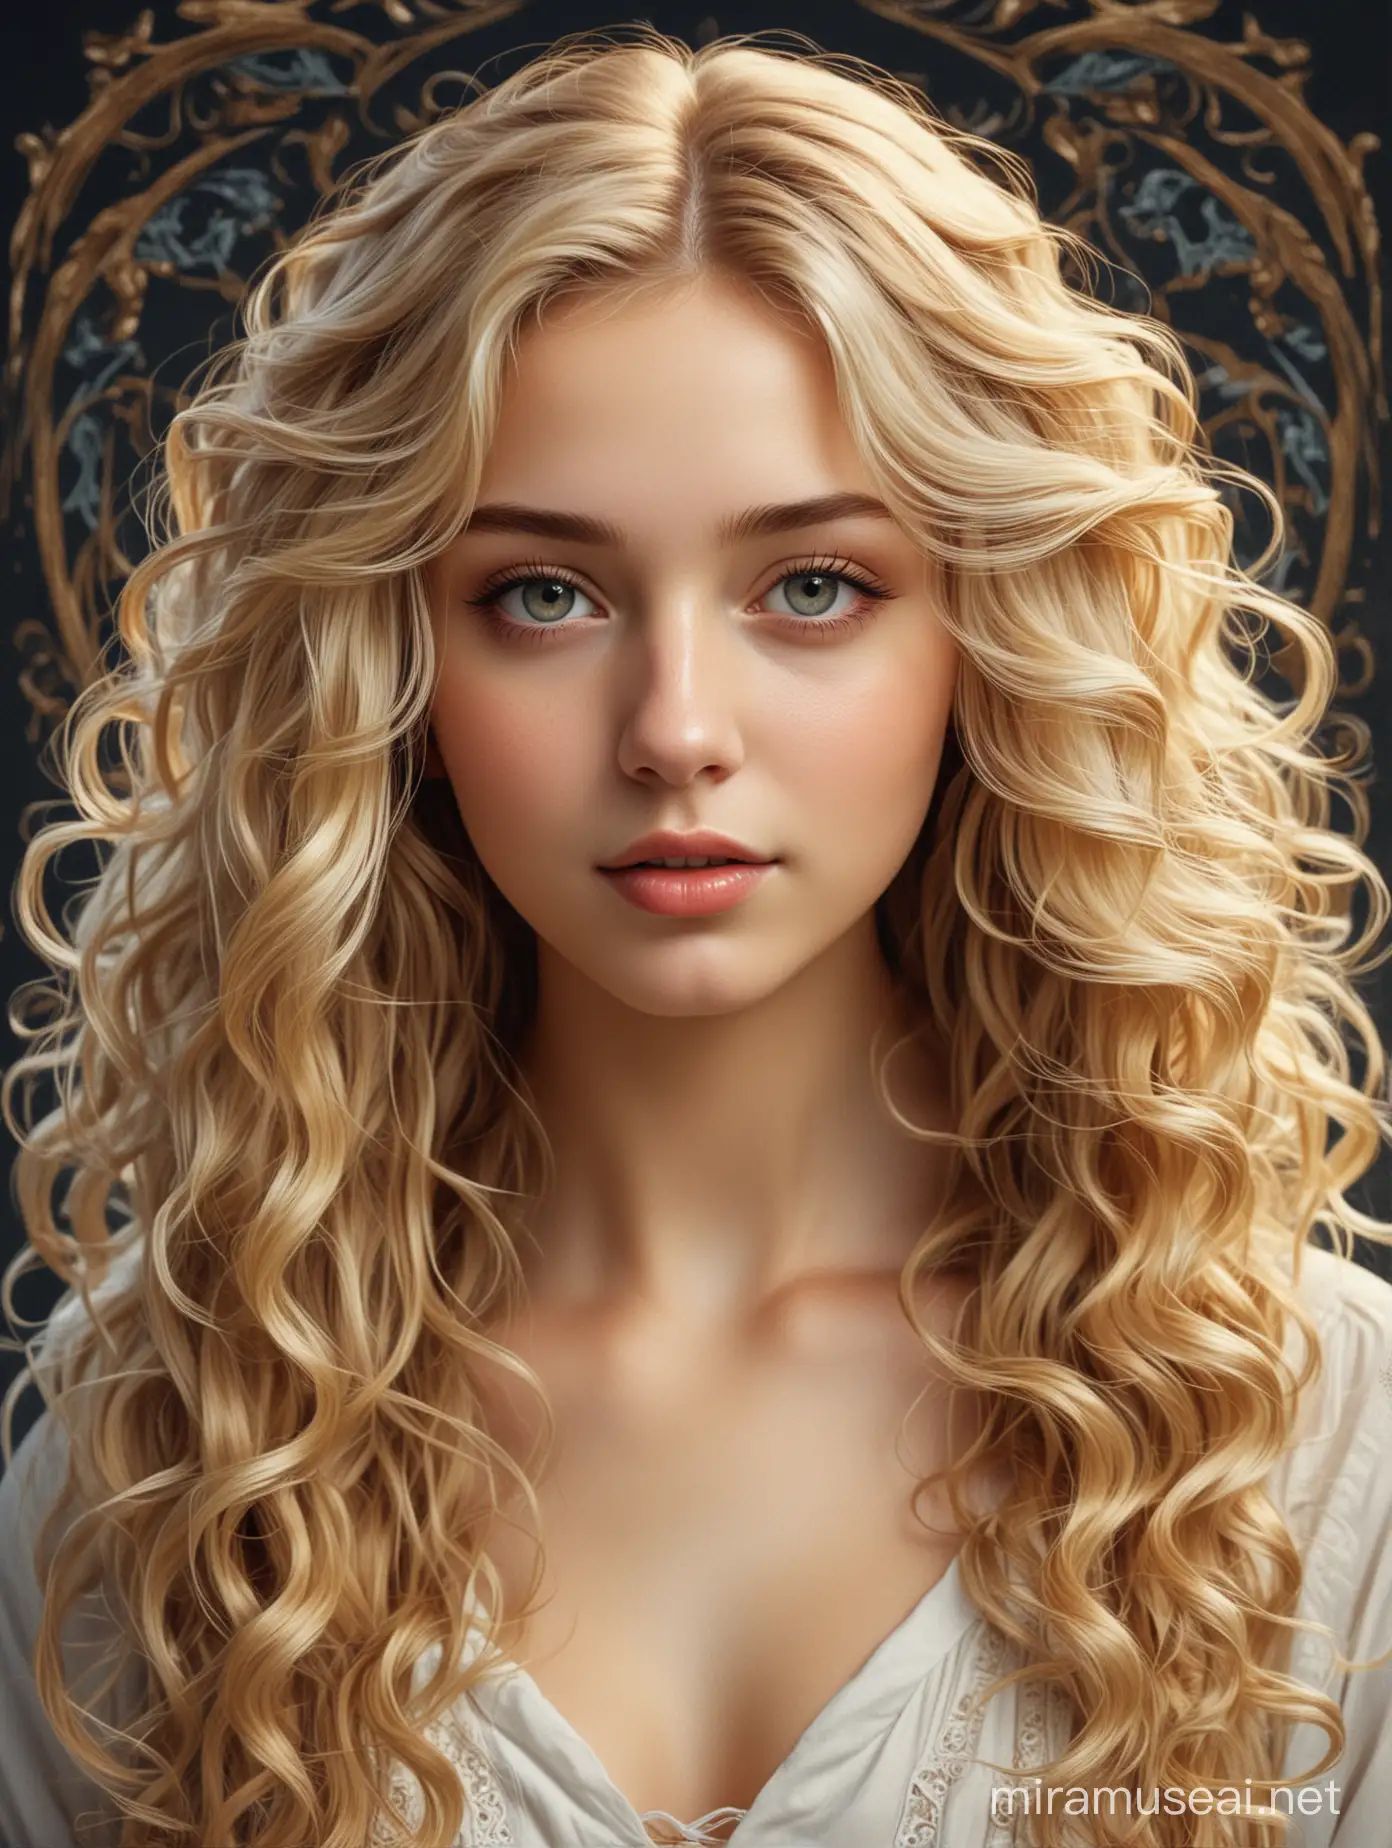 Портрет девушки, длинные волосы, блондинка, светлые глаза, юная, красивая девушка, волосы вьются, высокое качество текстур, обработка, стиль арт-нуво, иллюстрация